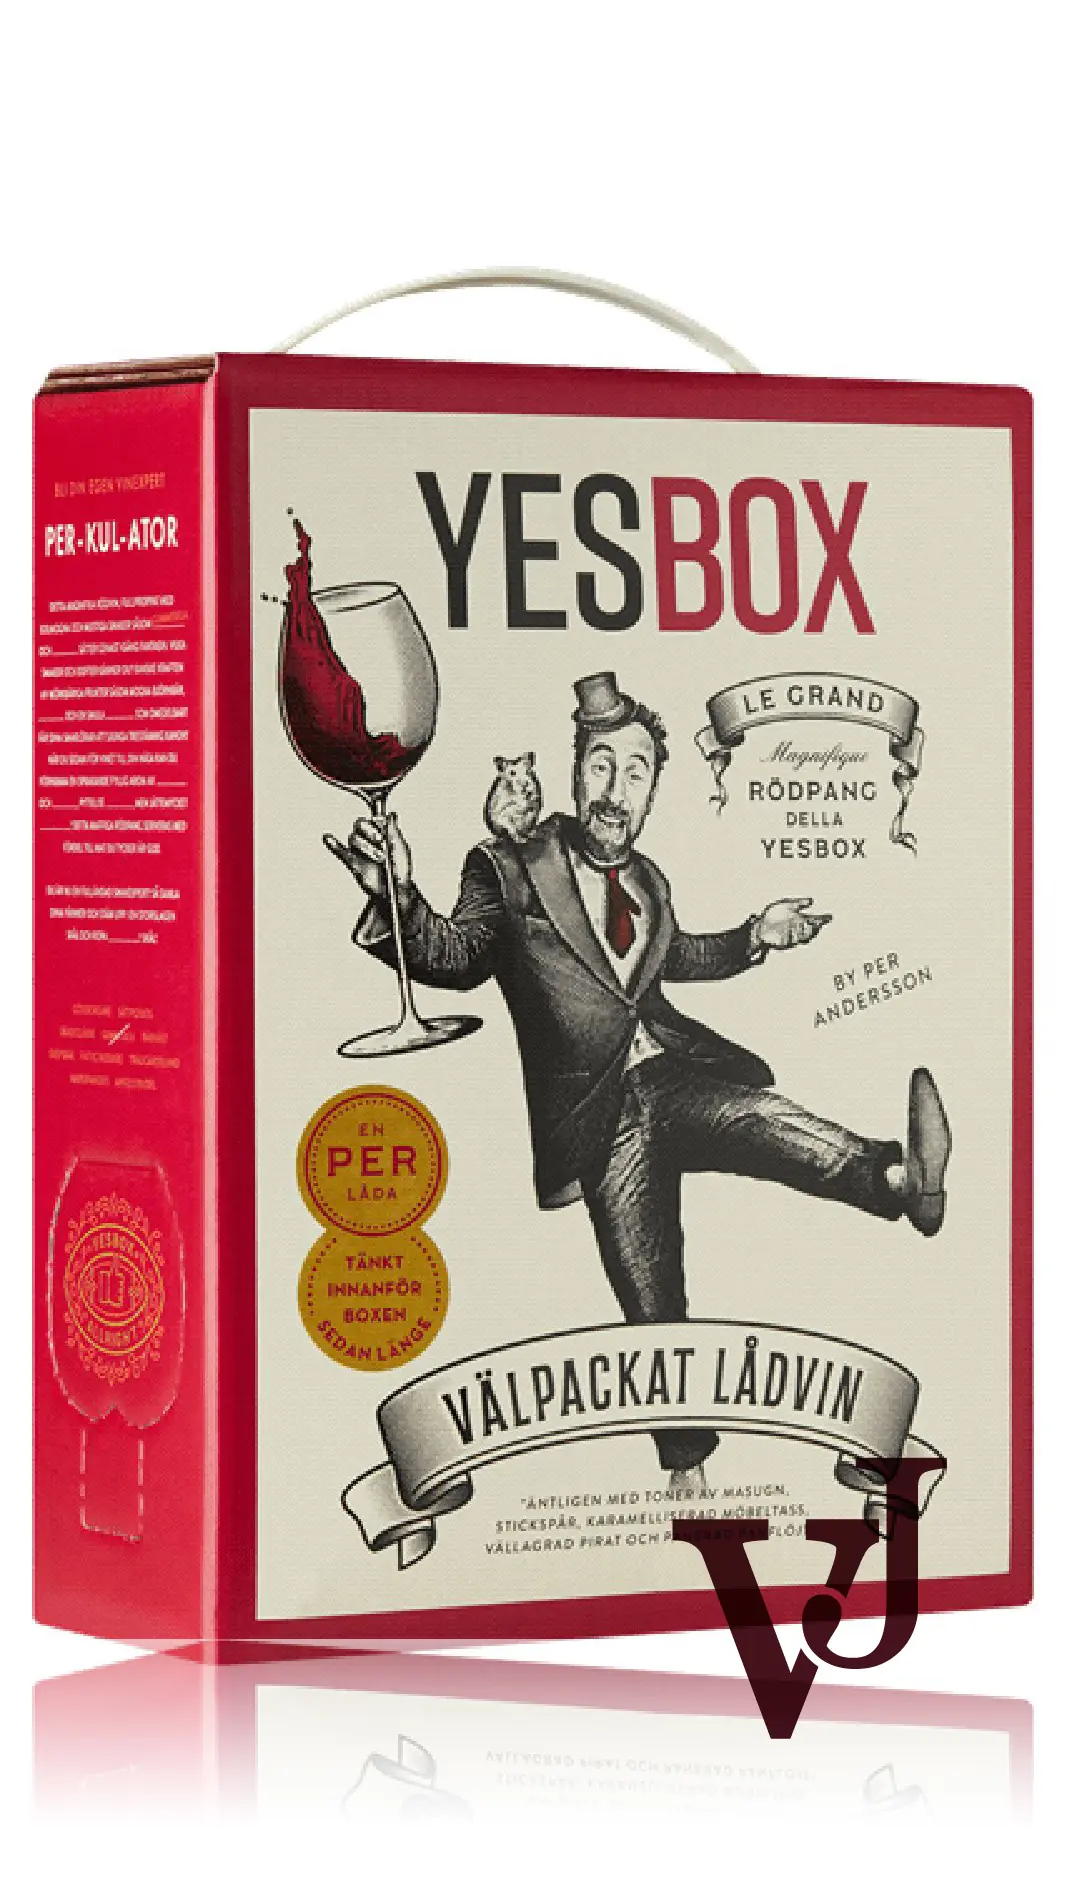 Rött Vin - Yesbox by Per Andersson artikel nummer 5953108 från producenten Liciacept (Pty) Ltd (trading as Visio Vintners) från Sydafrika - Vinjournalen.se